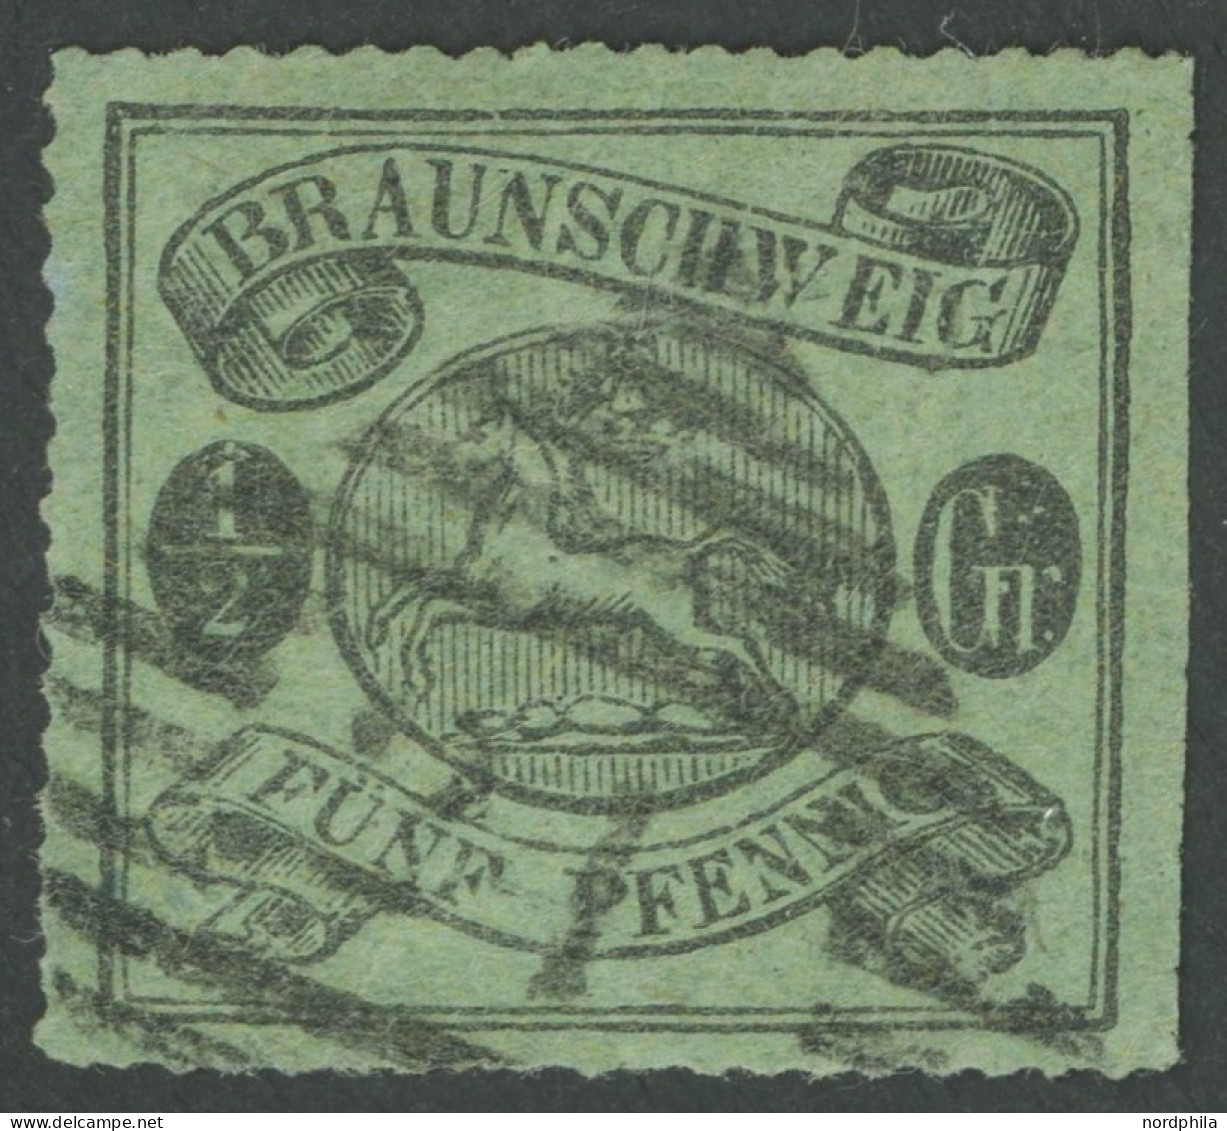 BRAUNSCHWEIG 10B O, 1864, 1/2 Gr. Schwarz Auf Lebhaftgraugrün, Bogenförmig Durchstochen 16, Nummernstempel 21 (Helmstedt - Brunswick